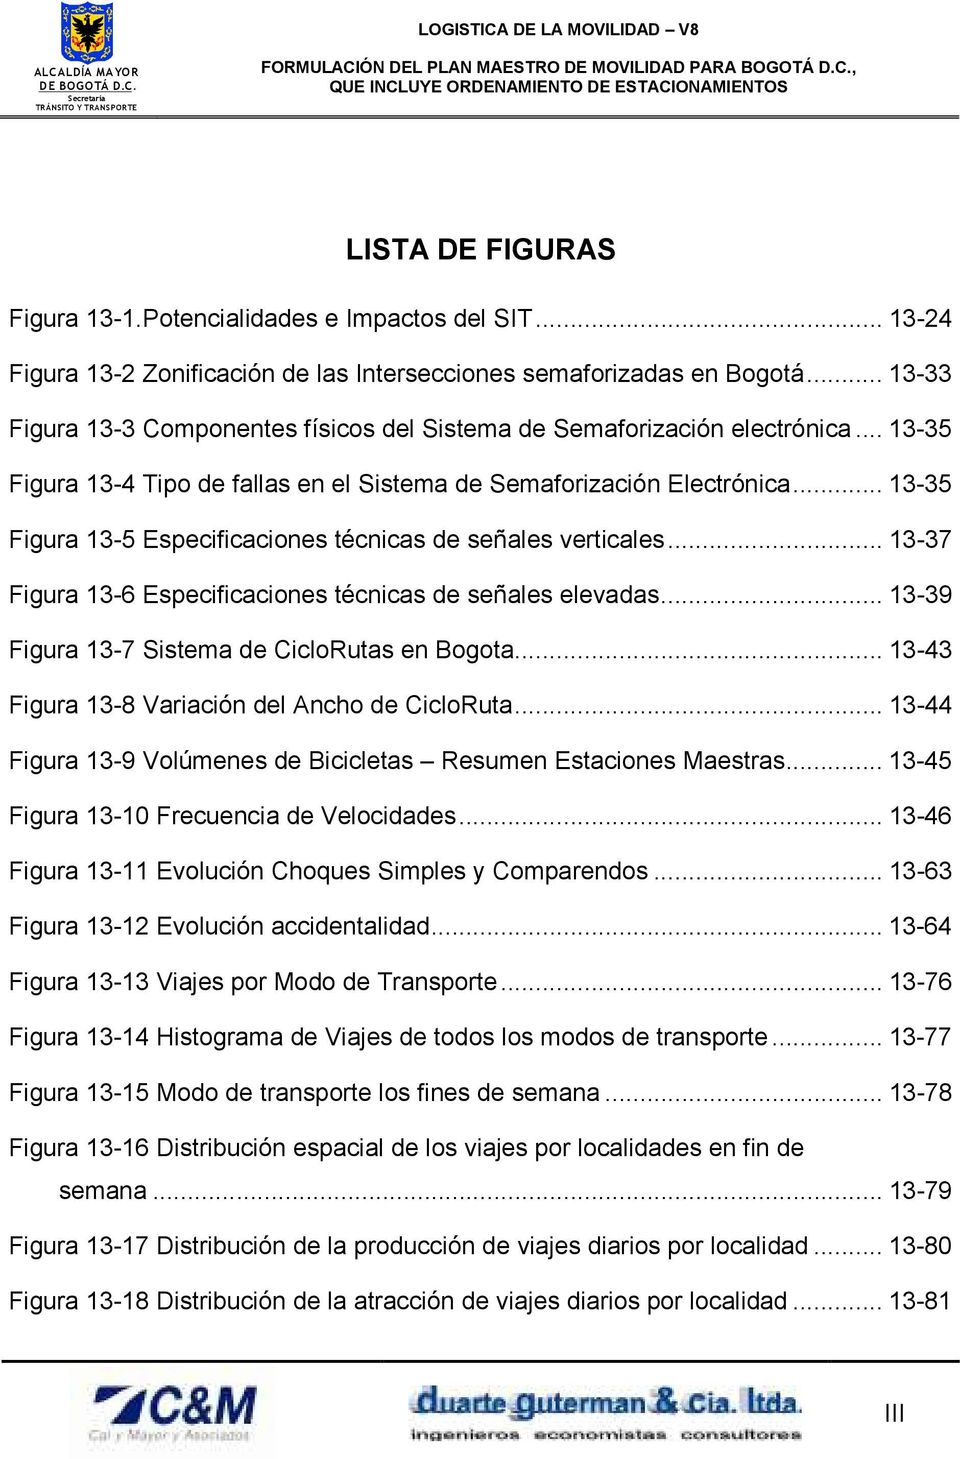 .. 13-35 Figura 13-5 Especificaciones técnicas de señales verticales... 13-37 Figura 13-6 Especificaciones técnicas de señales elevadas... 13-39 Figura 13-7 Sistema de CicloRutas en Bogota.